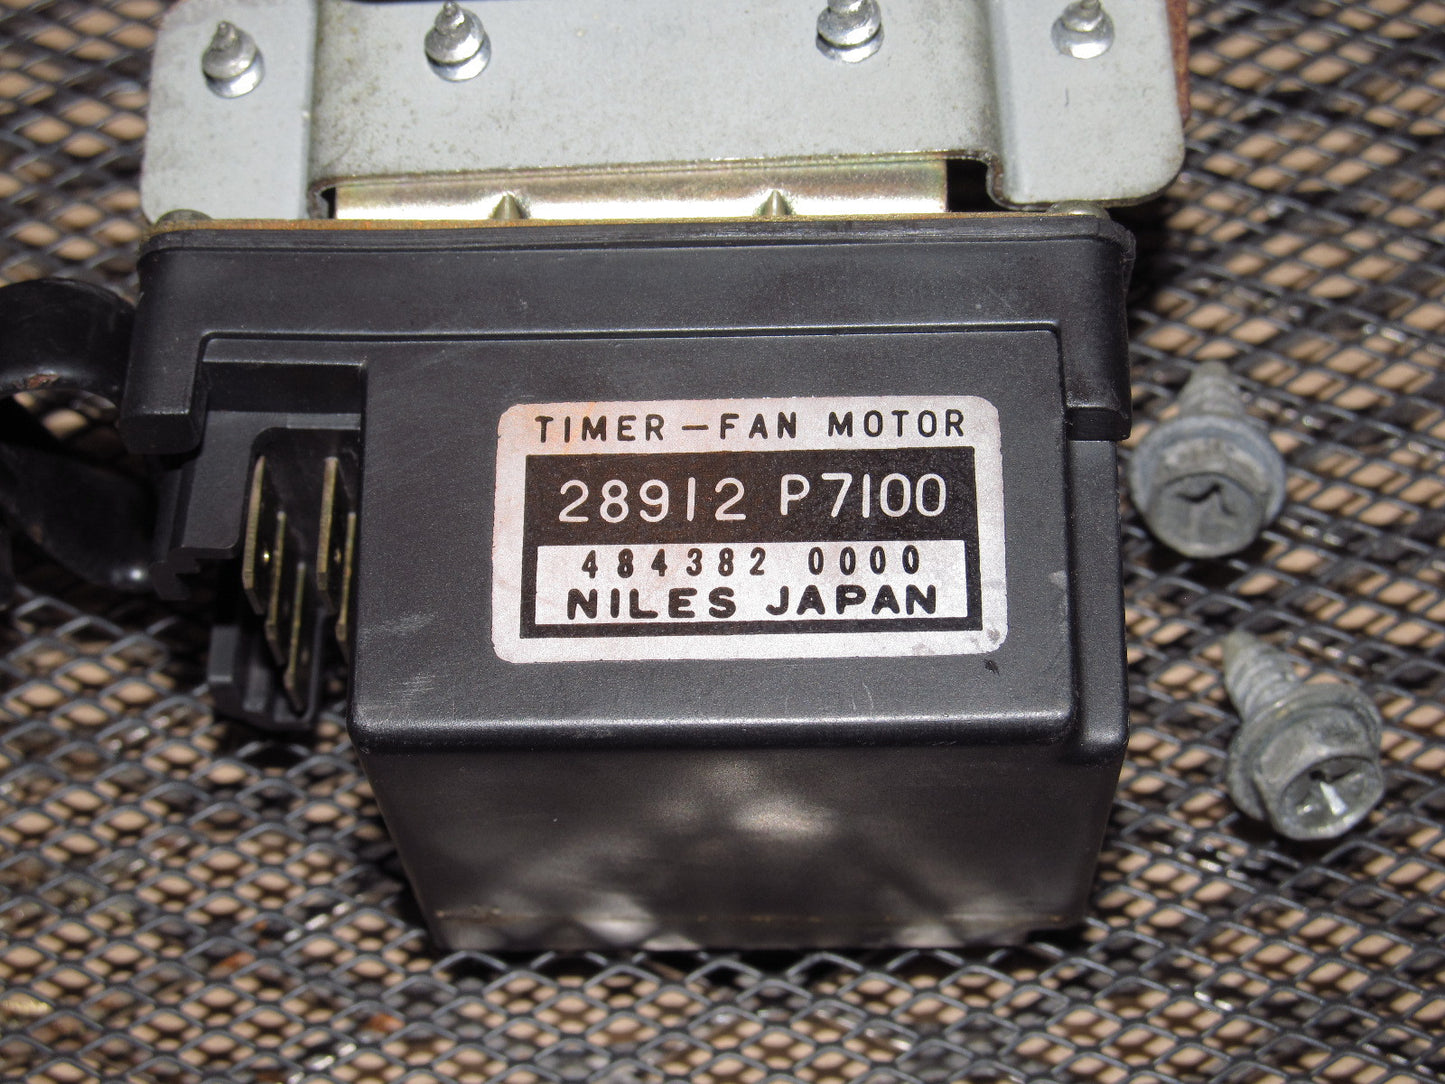 Datsun OEM Universal Relay - Timer-Fan Motor - 28912 P7100